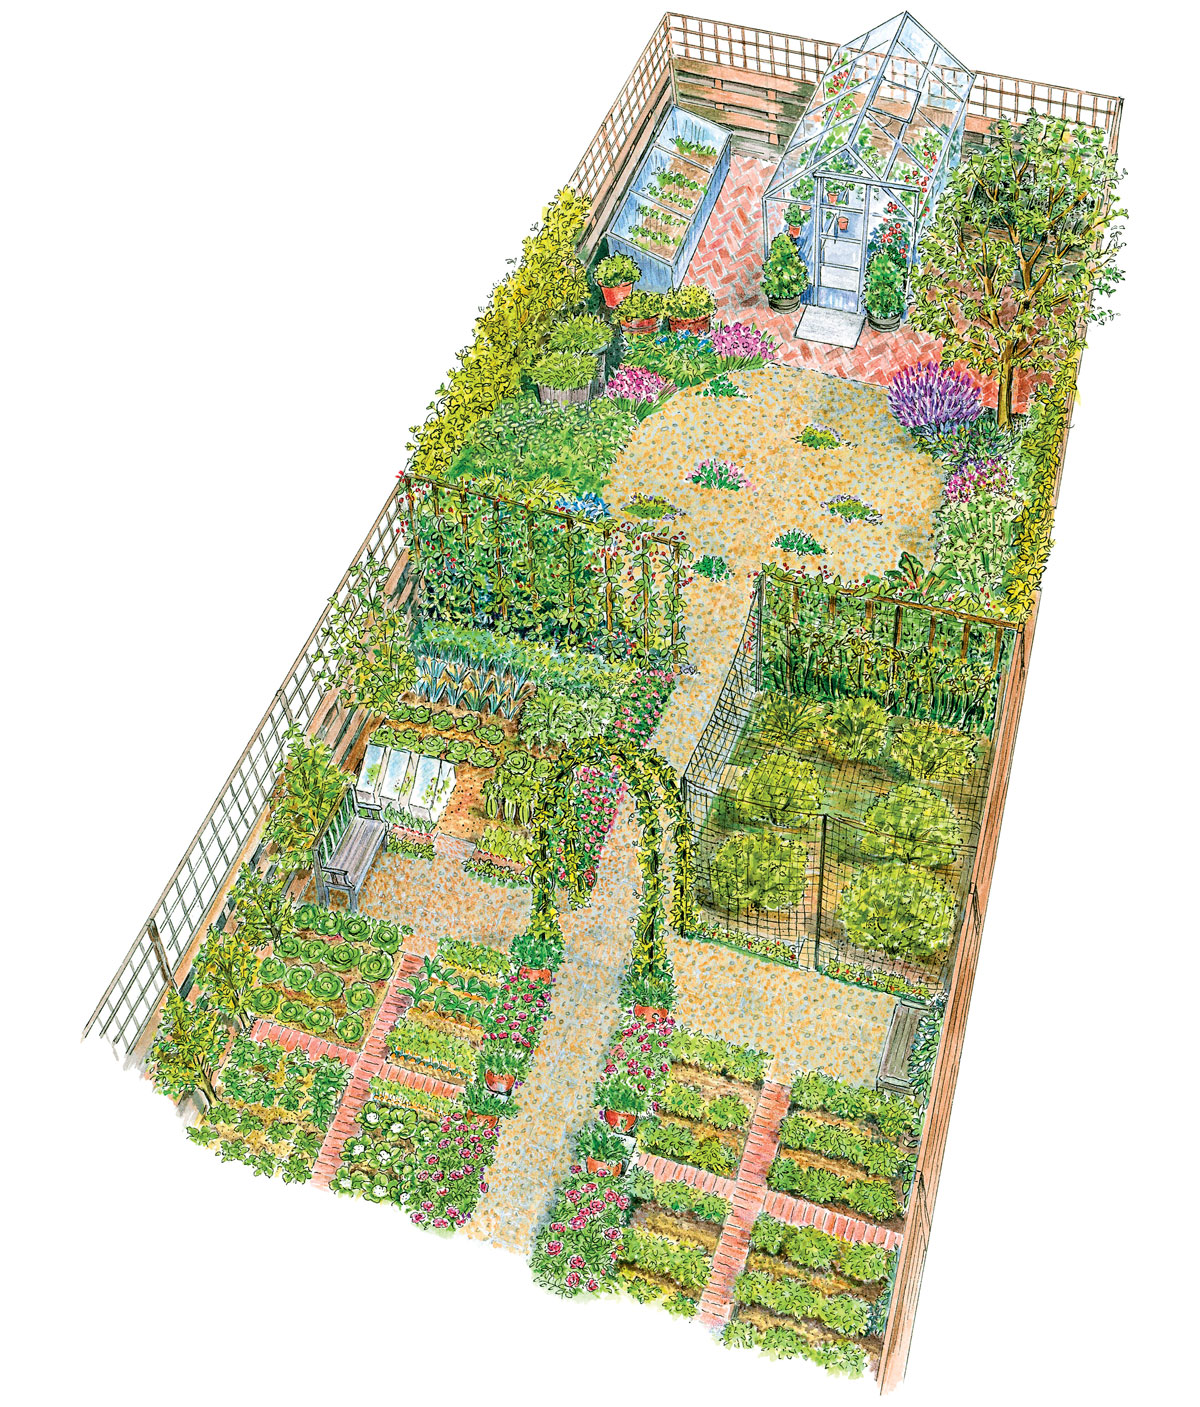 Vizualizace úzké zahrady s okrasnou a užitkovou funkcí